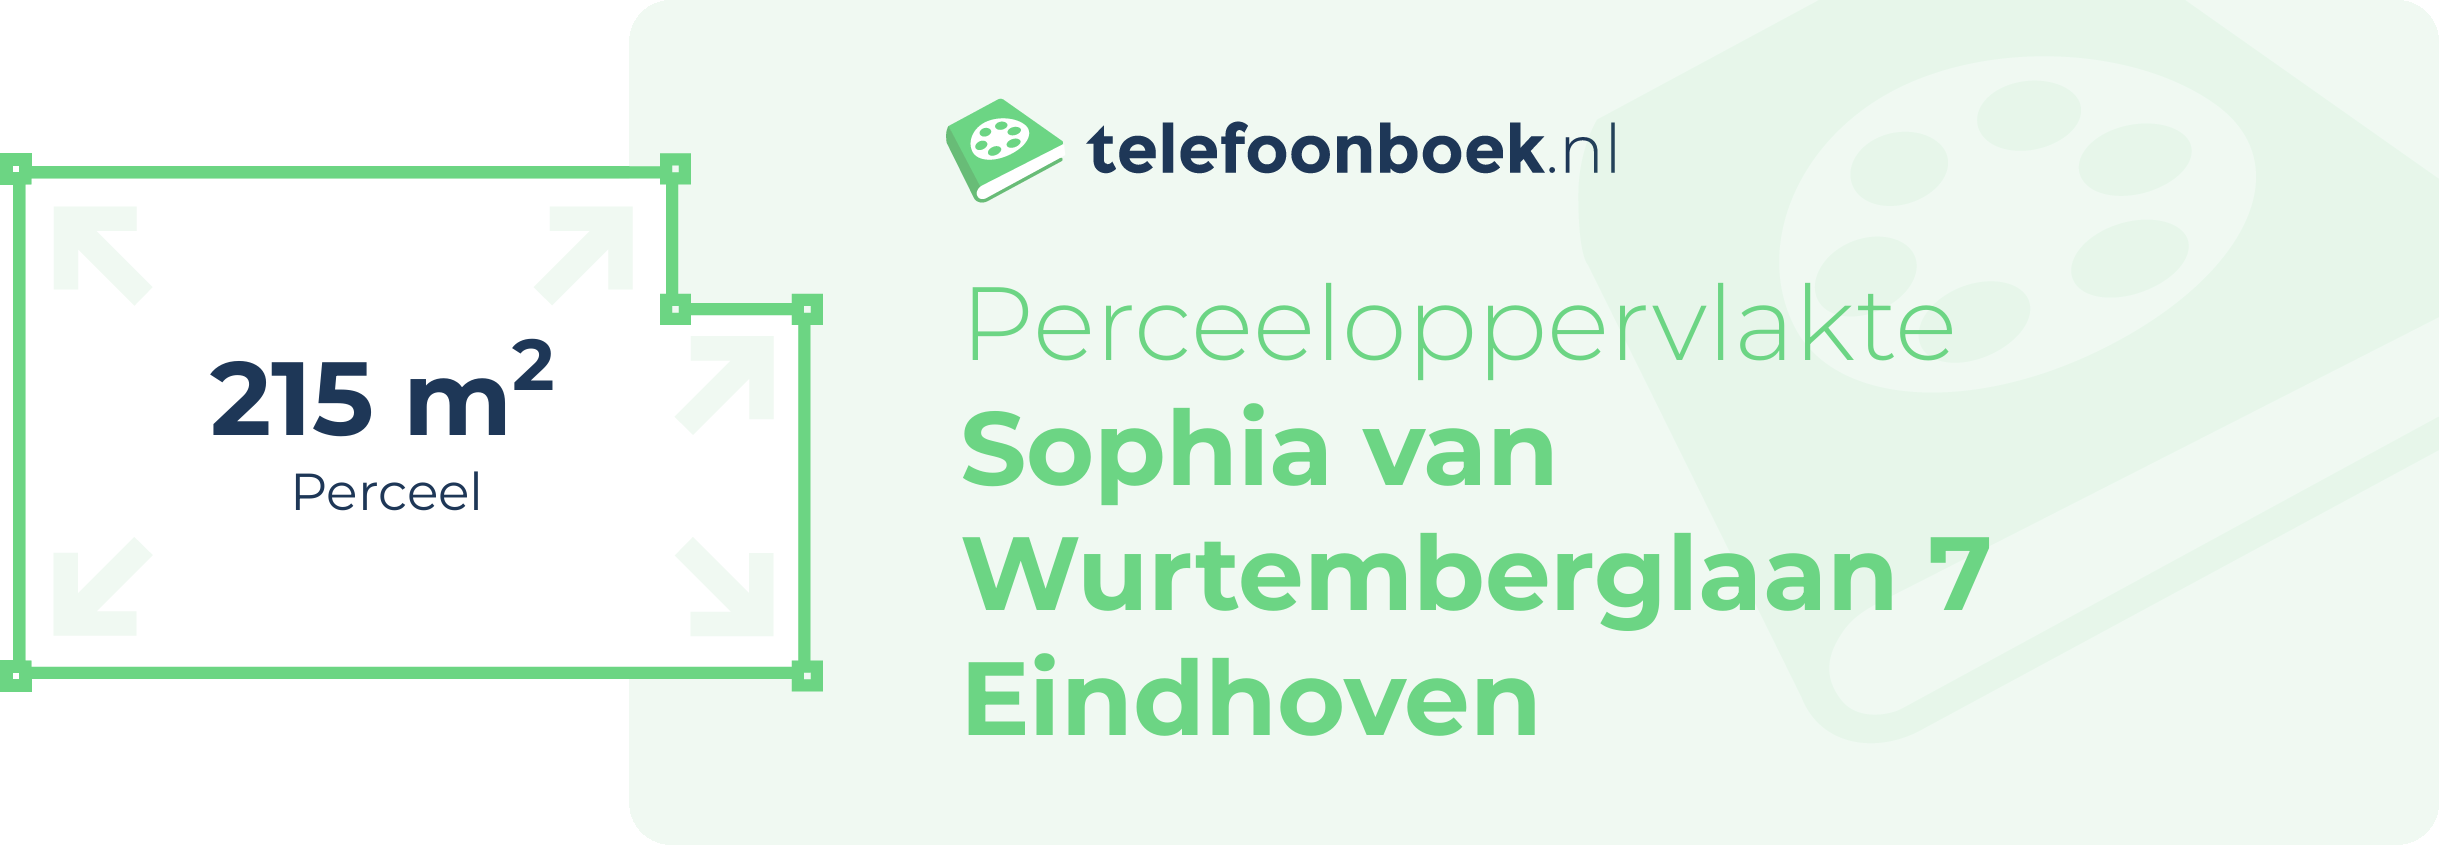 Perceeloppervlakte Sophia Van Wurtemberglaan 7 Eindhoven